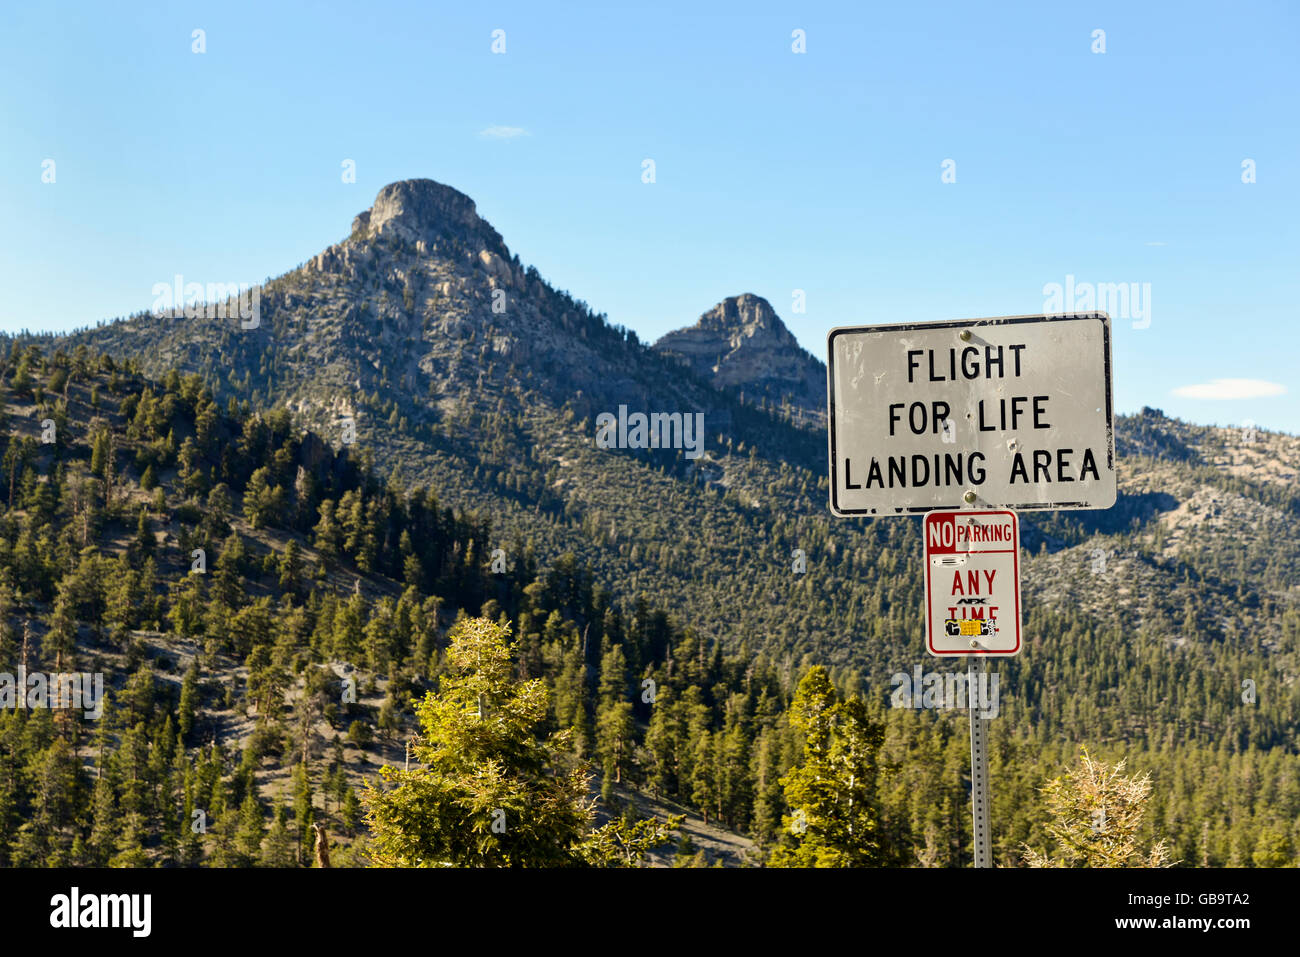 Un signe pour le 'Vol de vie" l'atterrissage sur le Mont Charleston, Las Vegas, Nevada Banque D'Images